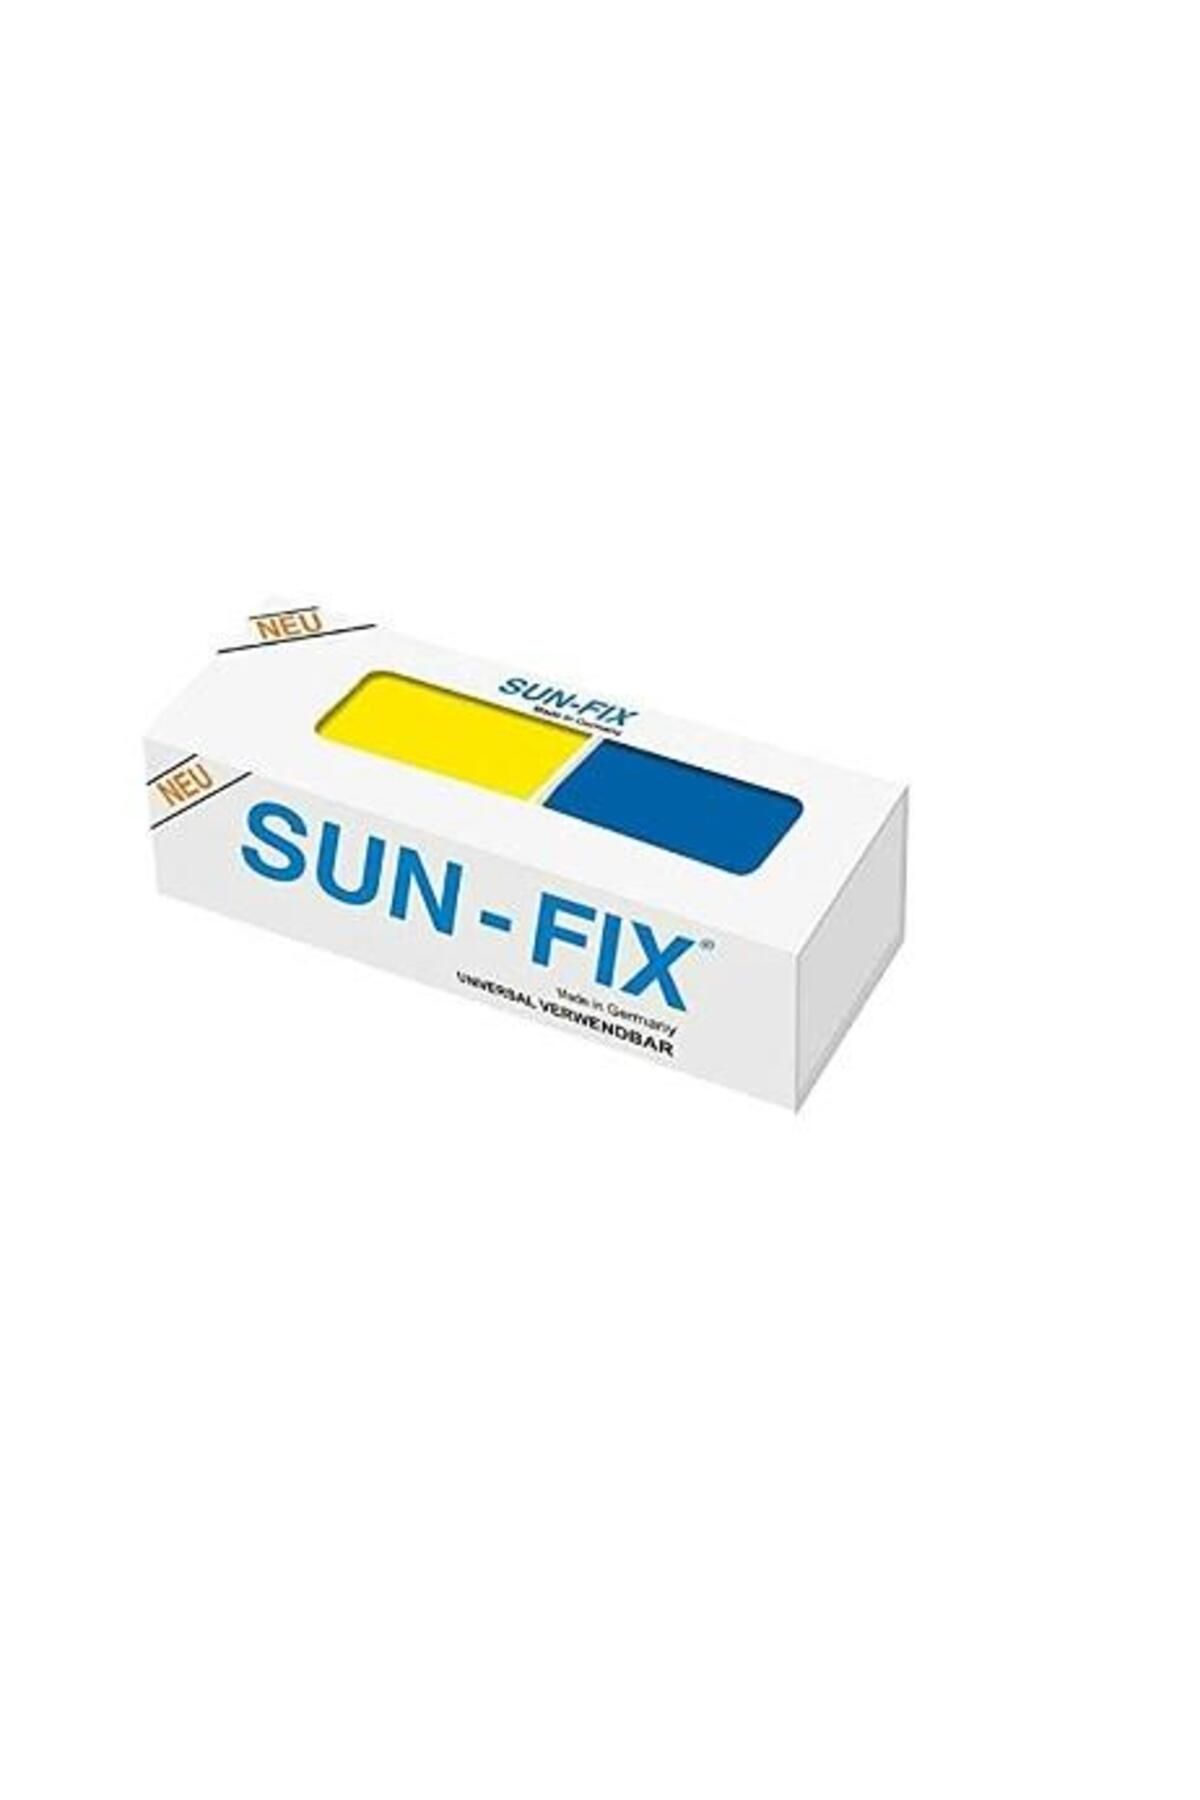 Sun-Fix Sun-fıx Germany Yapıştırıcı 40 gr Çift Karışım (SARI MAVİ)